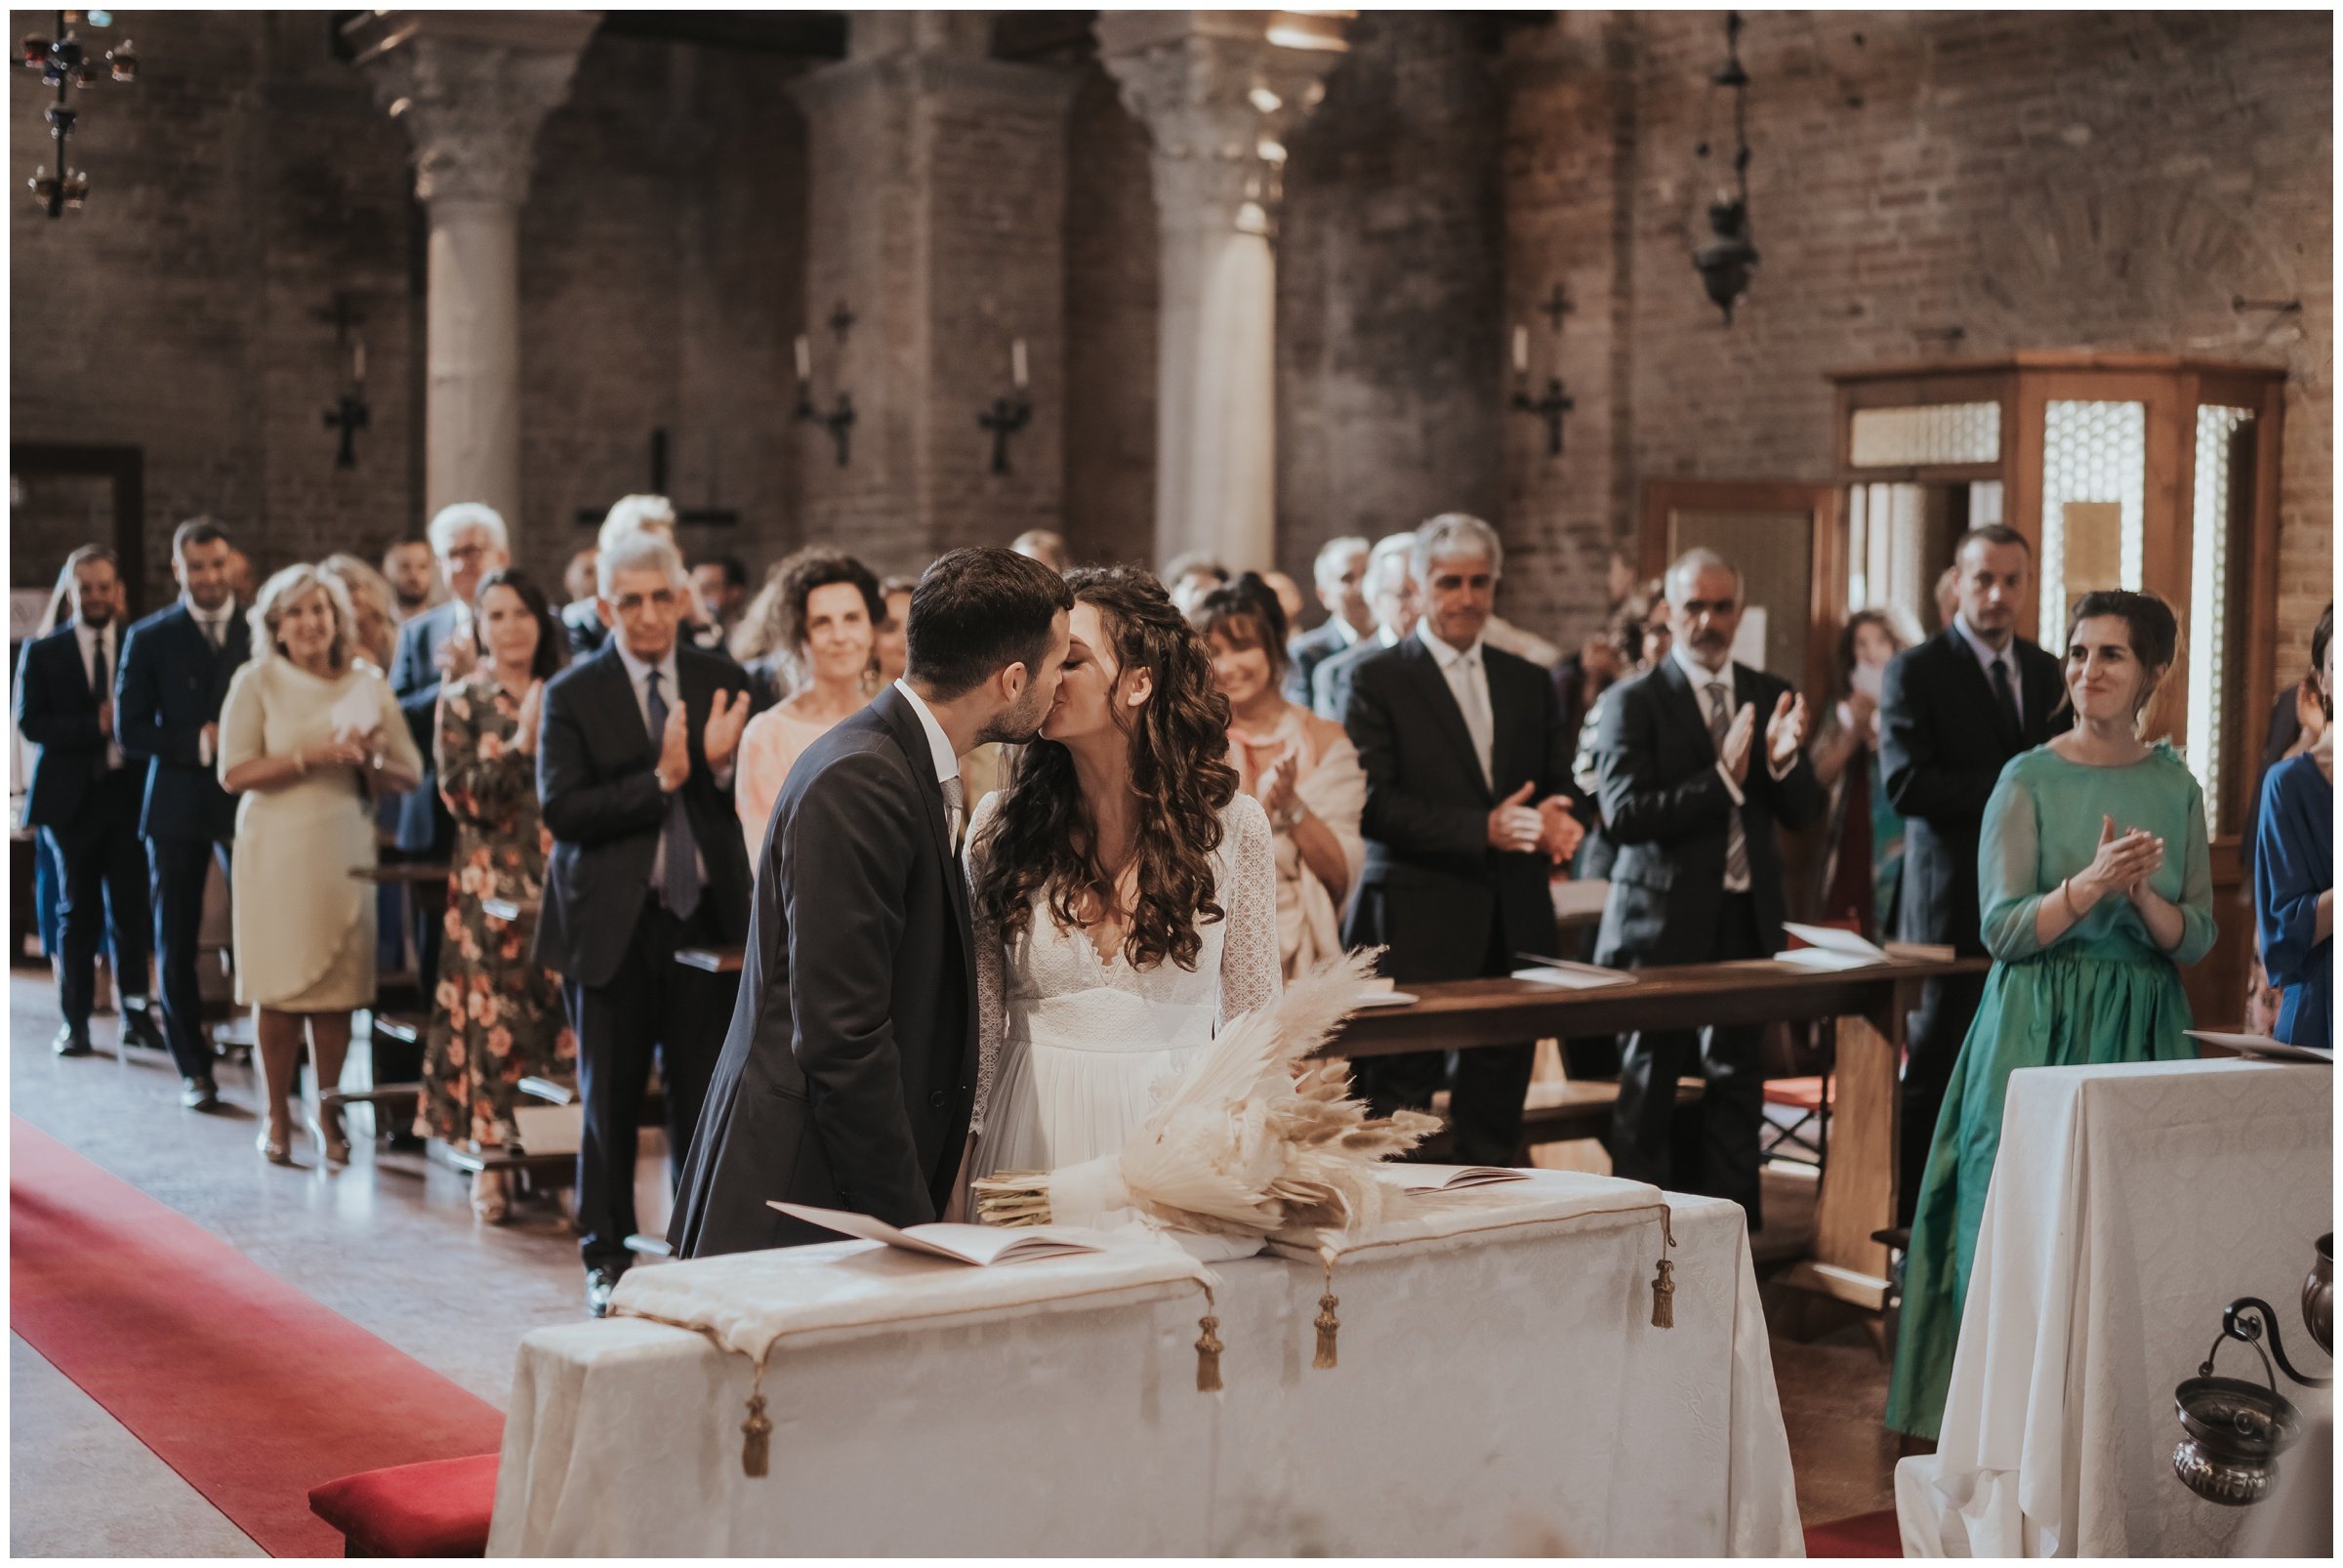 Matrimonio-locanda-cipriani-torcello-fotografo-matrimonio-treviso-fotografo-matrimonio-venezia_0061.jpg